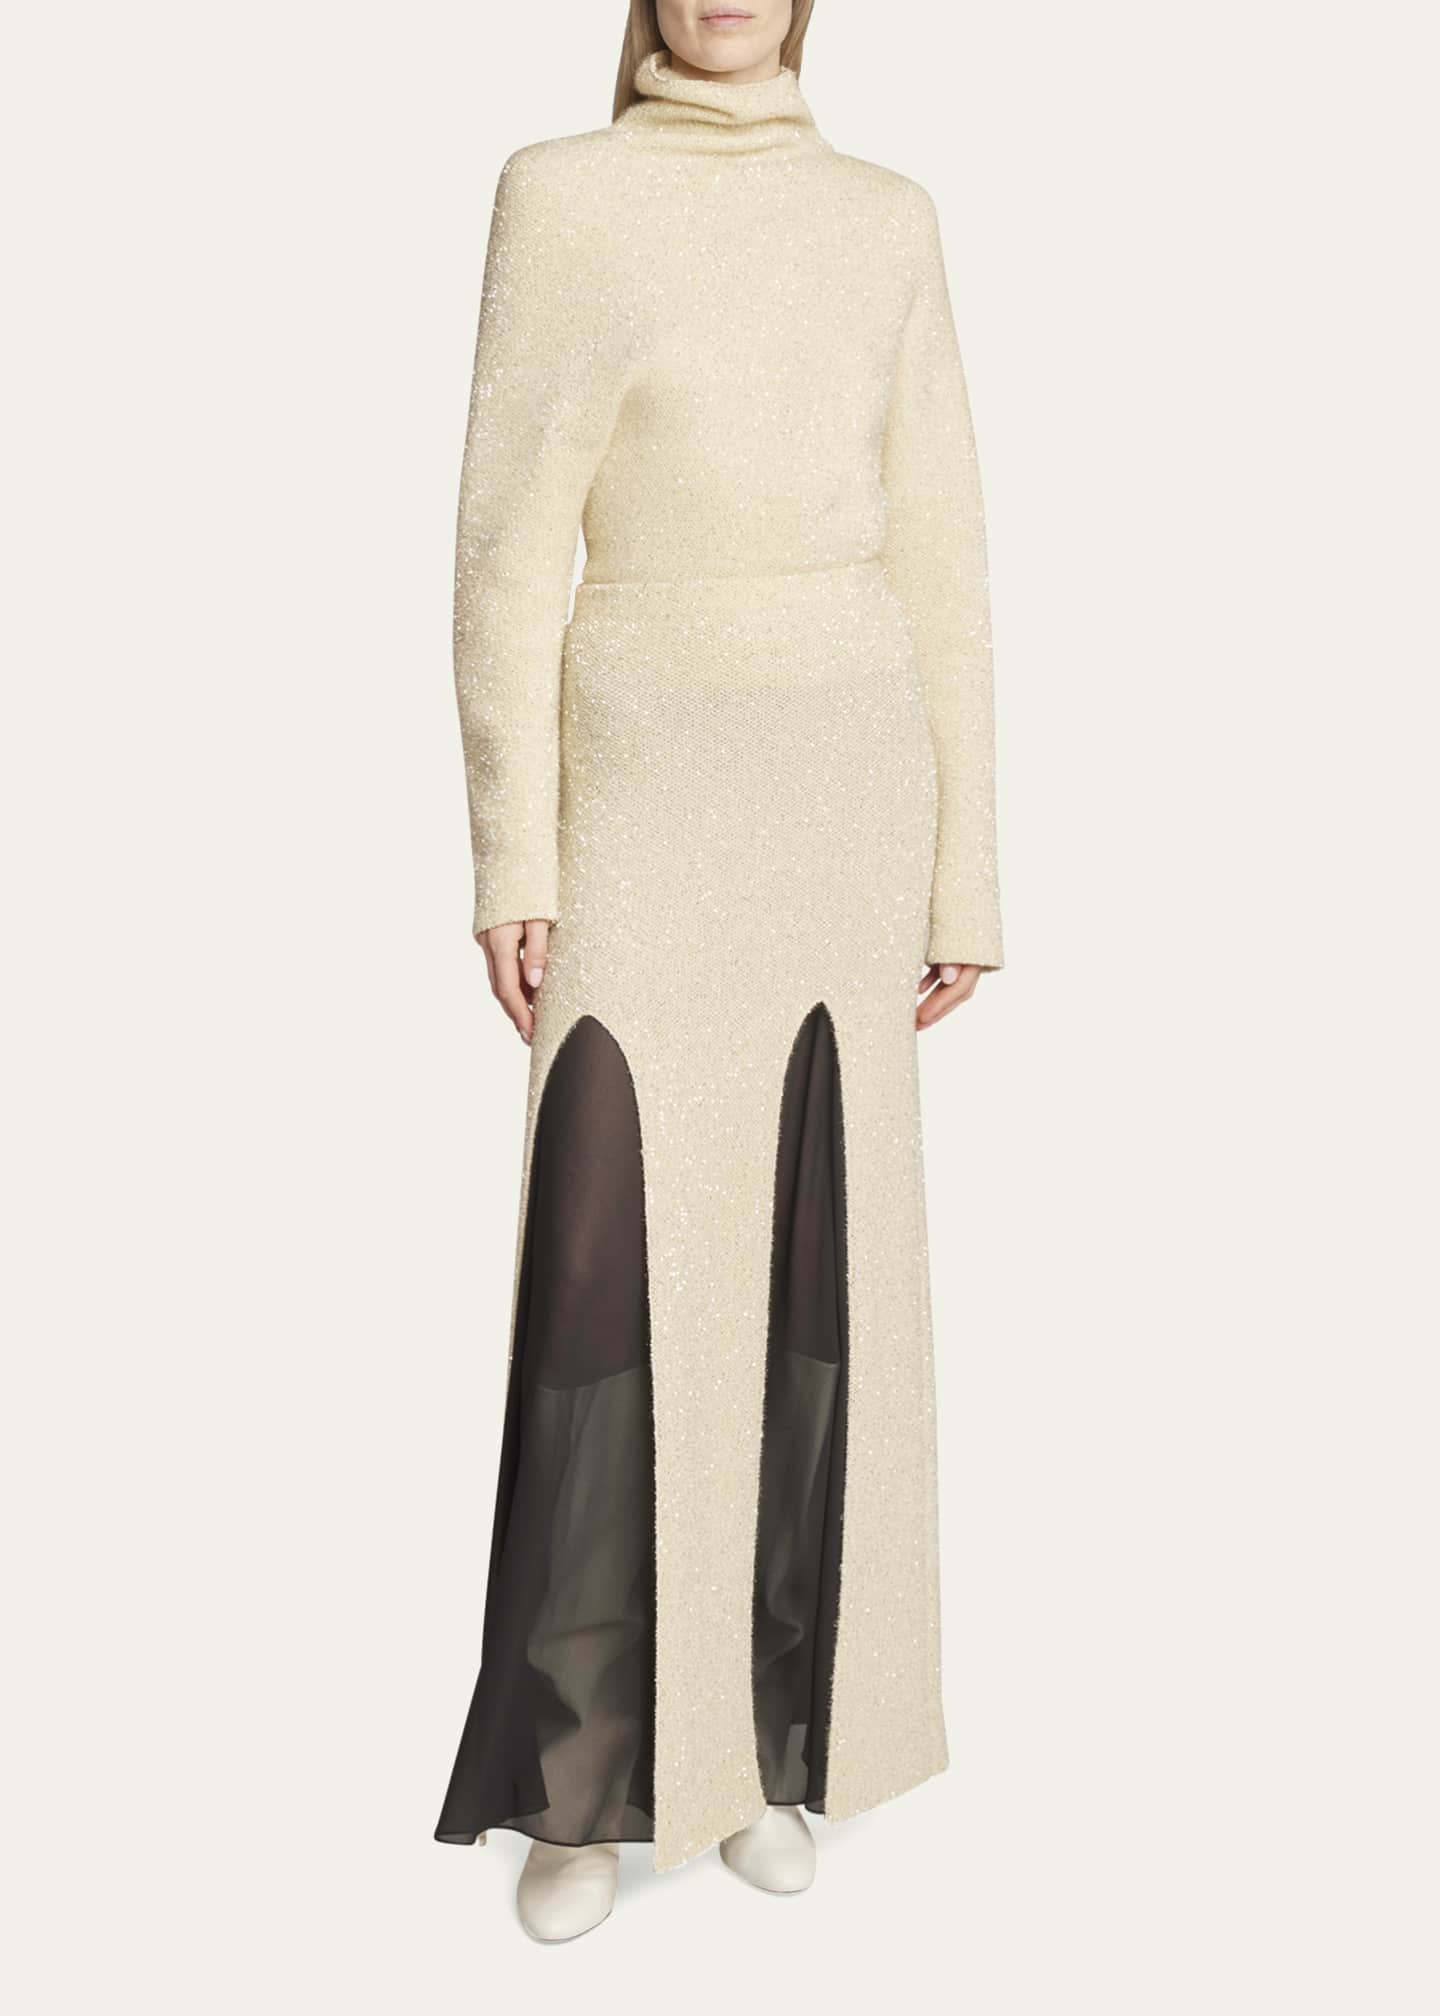 Proenza Schouler Technical Sequin Knit Slit Skirt - Bergdorf Goodman